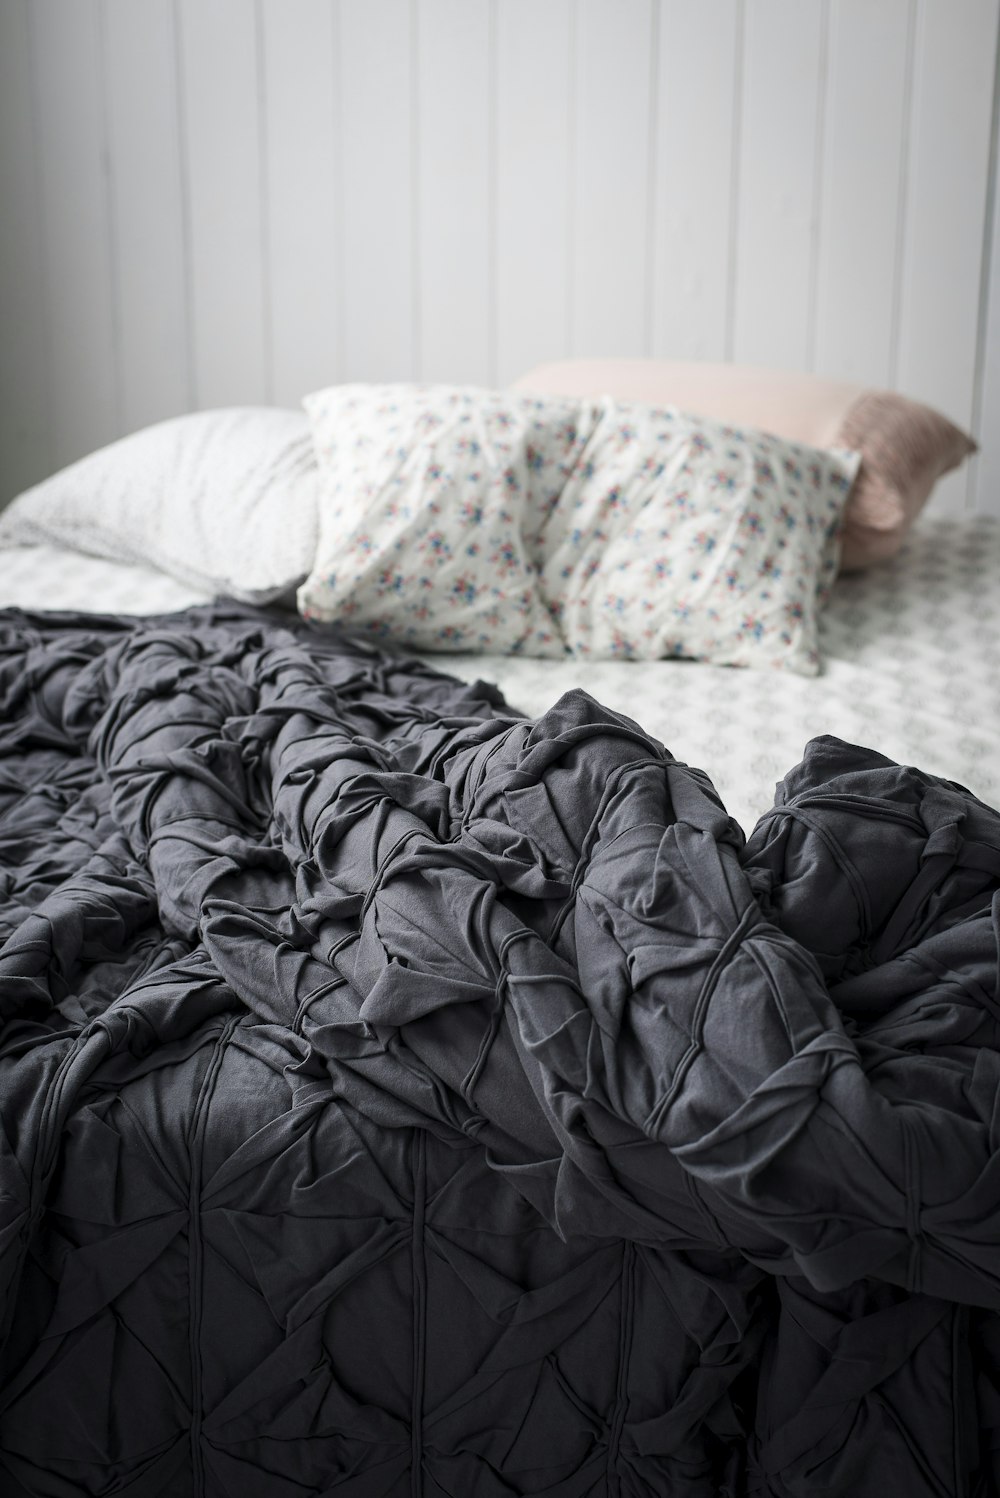 ベッドの上の灰色の掛け布団のクローズアップ写真